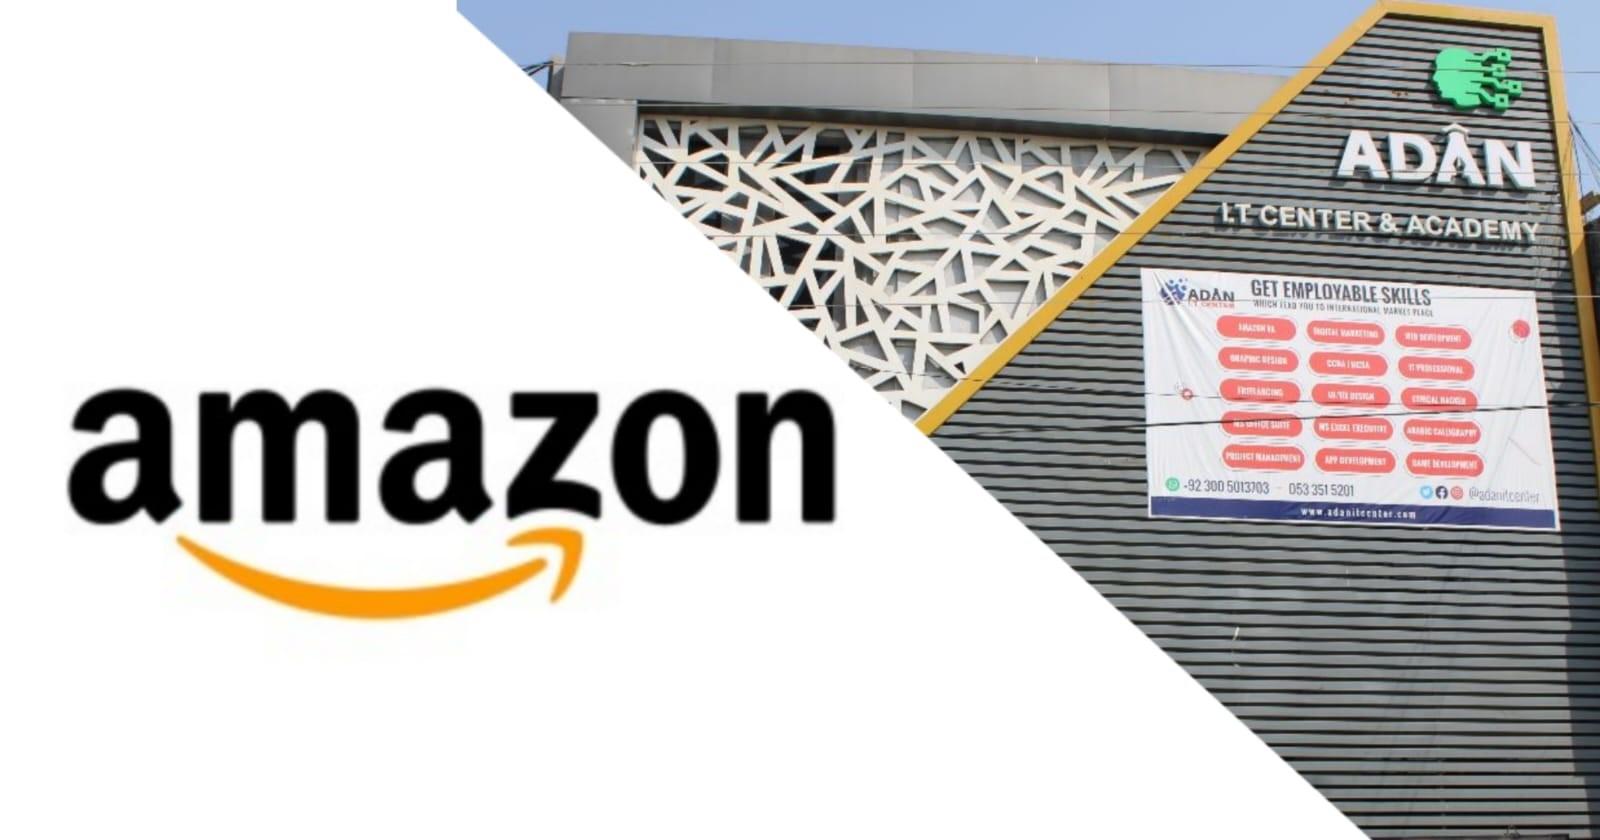 Amazon Marketplace in Pakistan